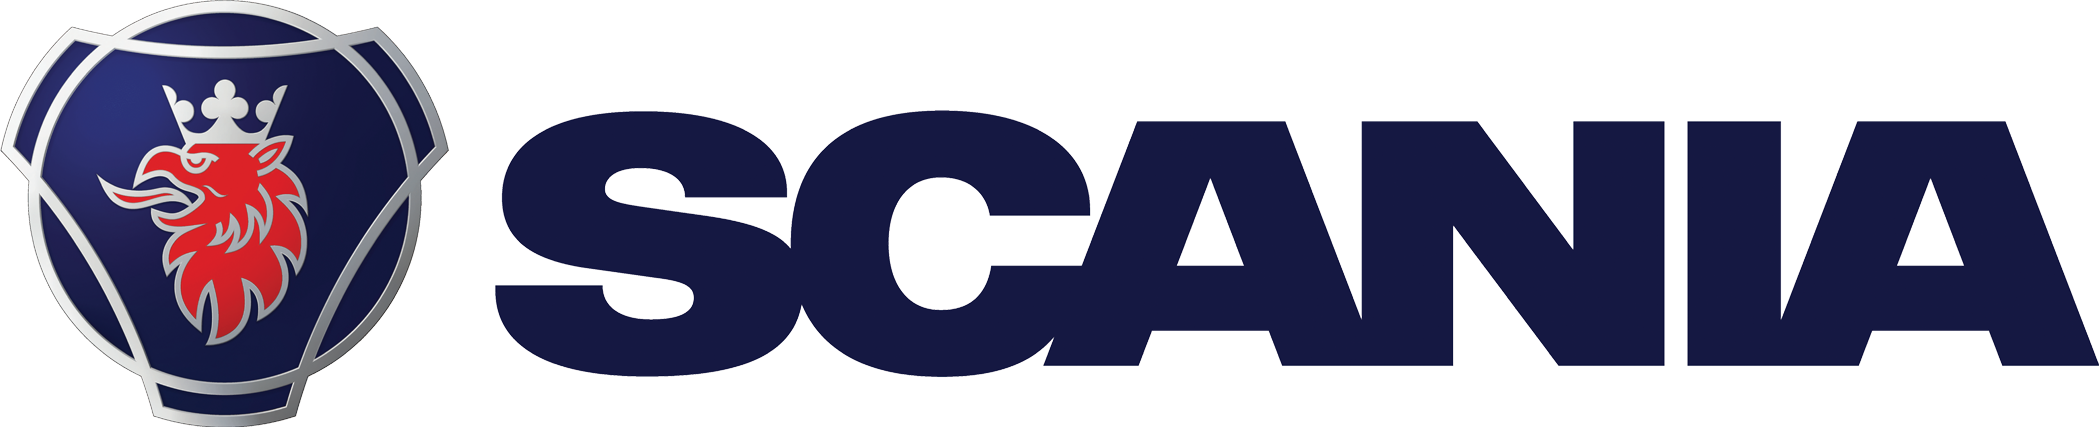 2017 Scania Linear Logo - Scania Logo (2100x427)